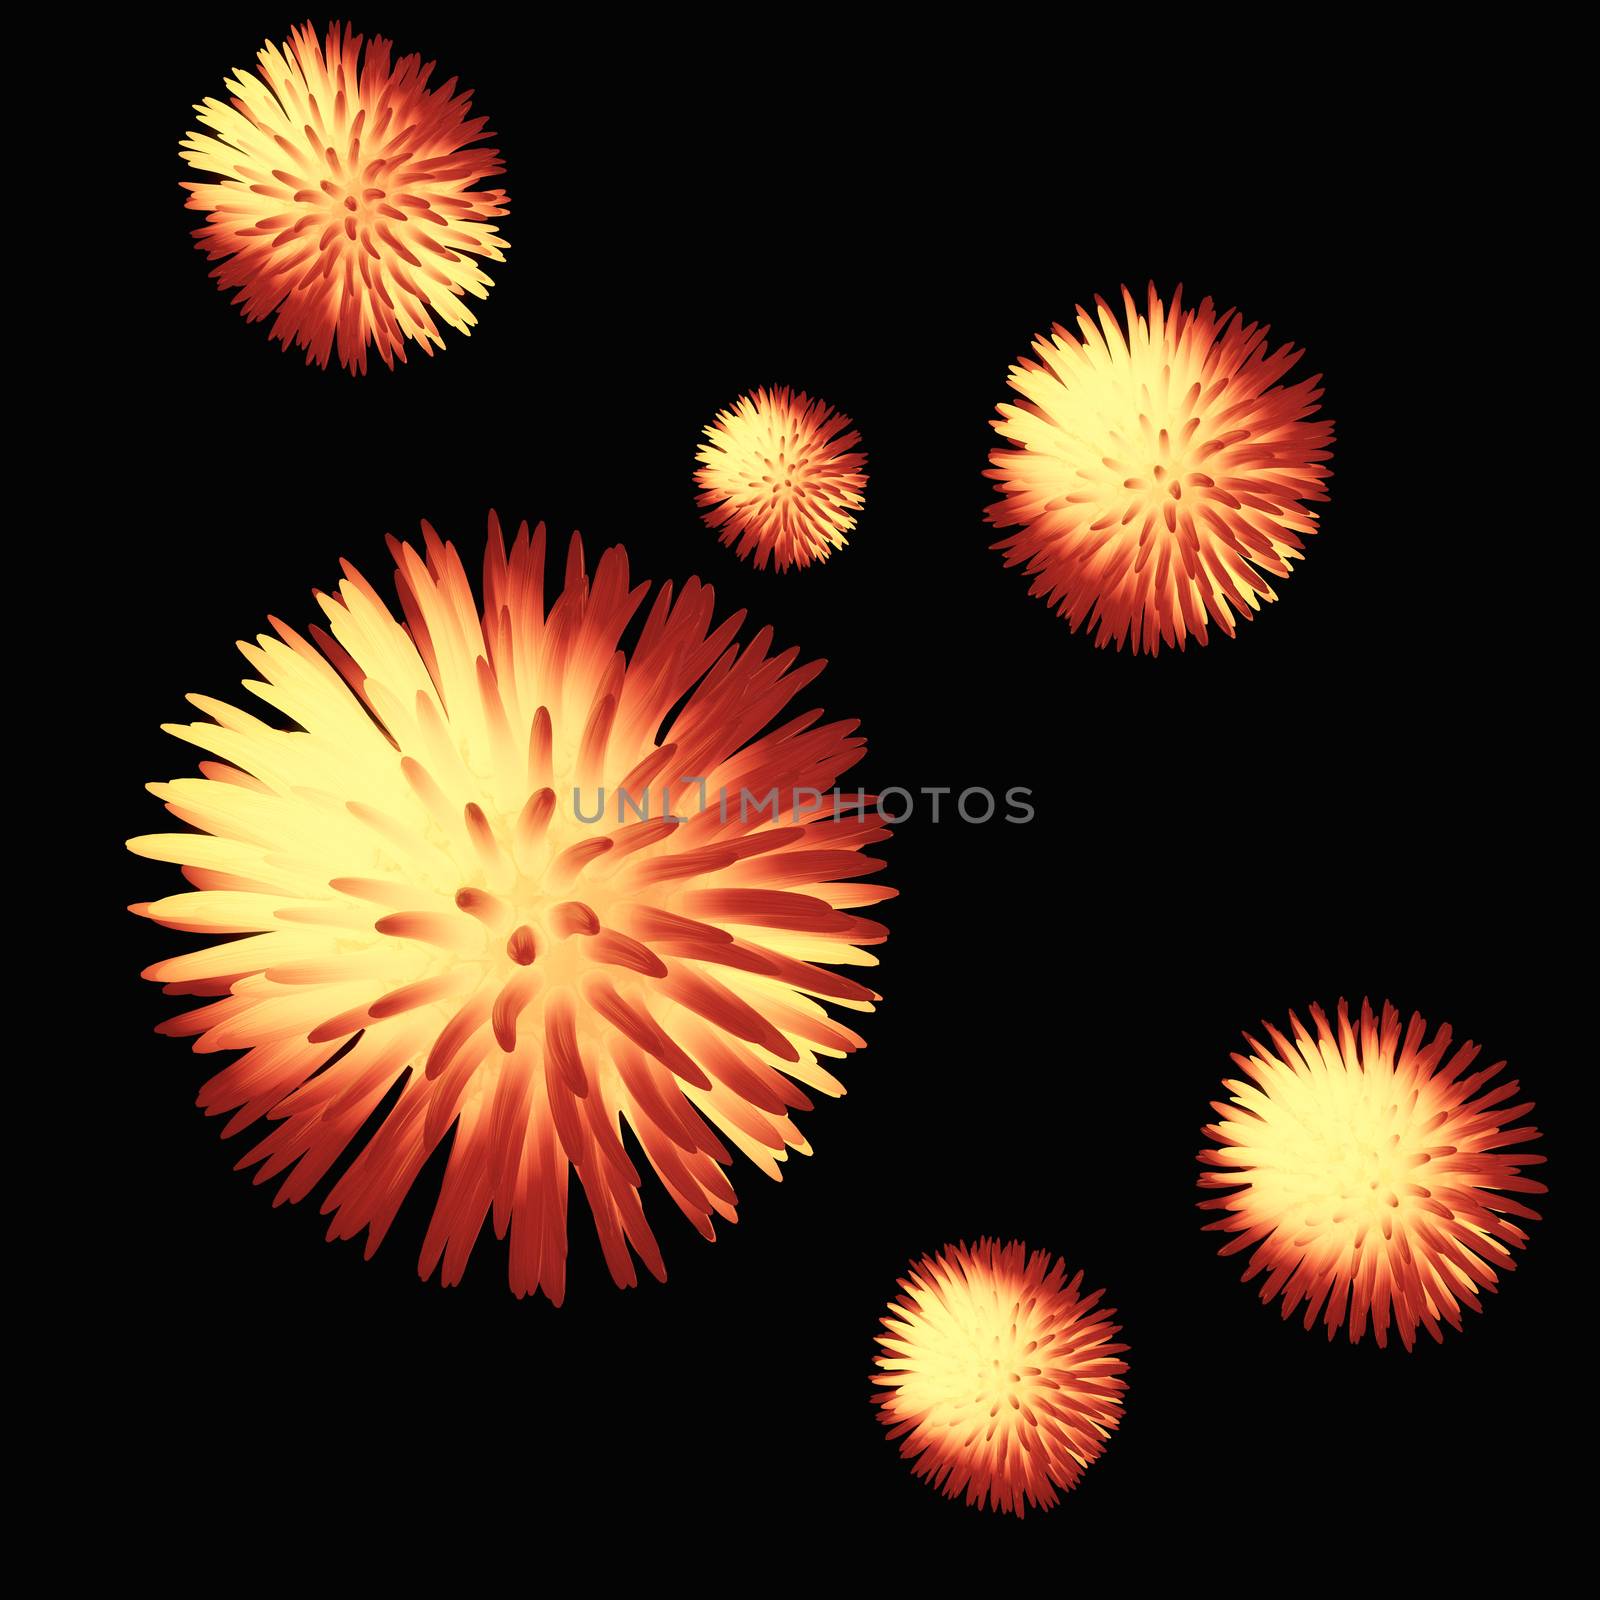 Digital Illustration of a Virus